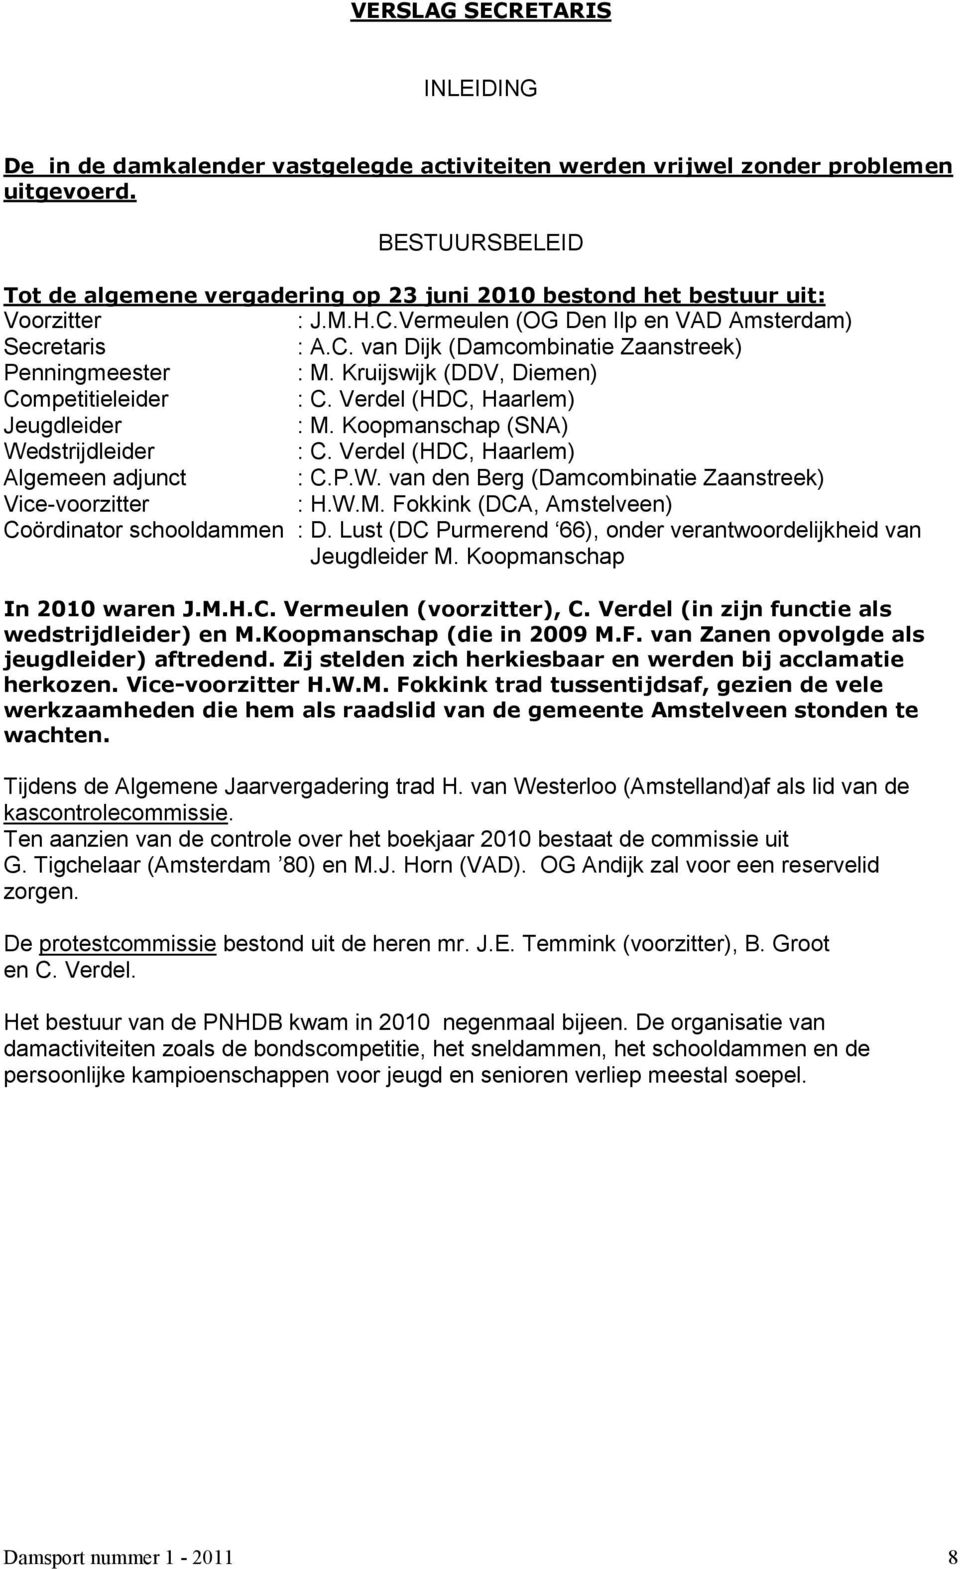 Kruijswijk (DDV, Diemen) Competitieleider : C. Verdel (HDC, Haarlem) Jeugdleider : M. Koopmanschap (SNA) Wedstrijdleider : C. Verdel (HDC, Haarlem) Algemeen adjunct : C.P.W. van den Berg (Damcombinatie Zaanstreek) Vice-voorzitter : H.